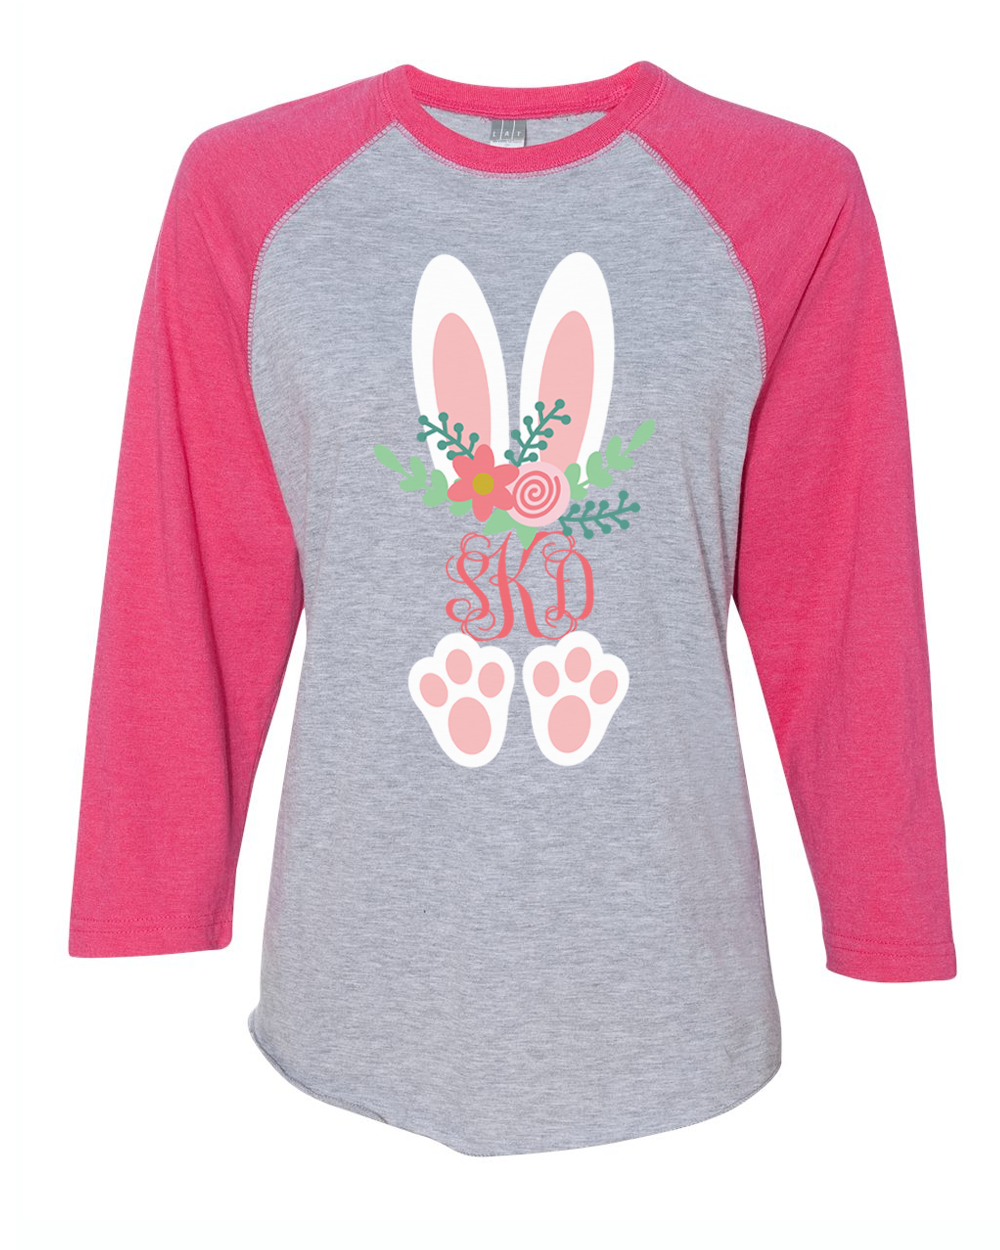 Monogram Floral Bunny Ears & Feet Easter Raglan Tee